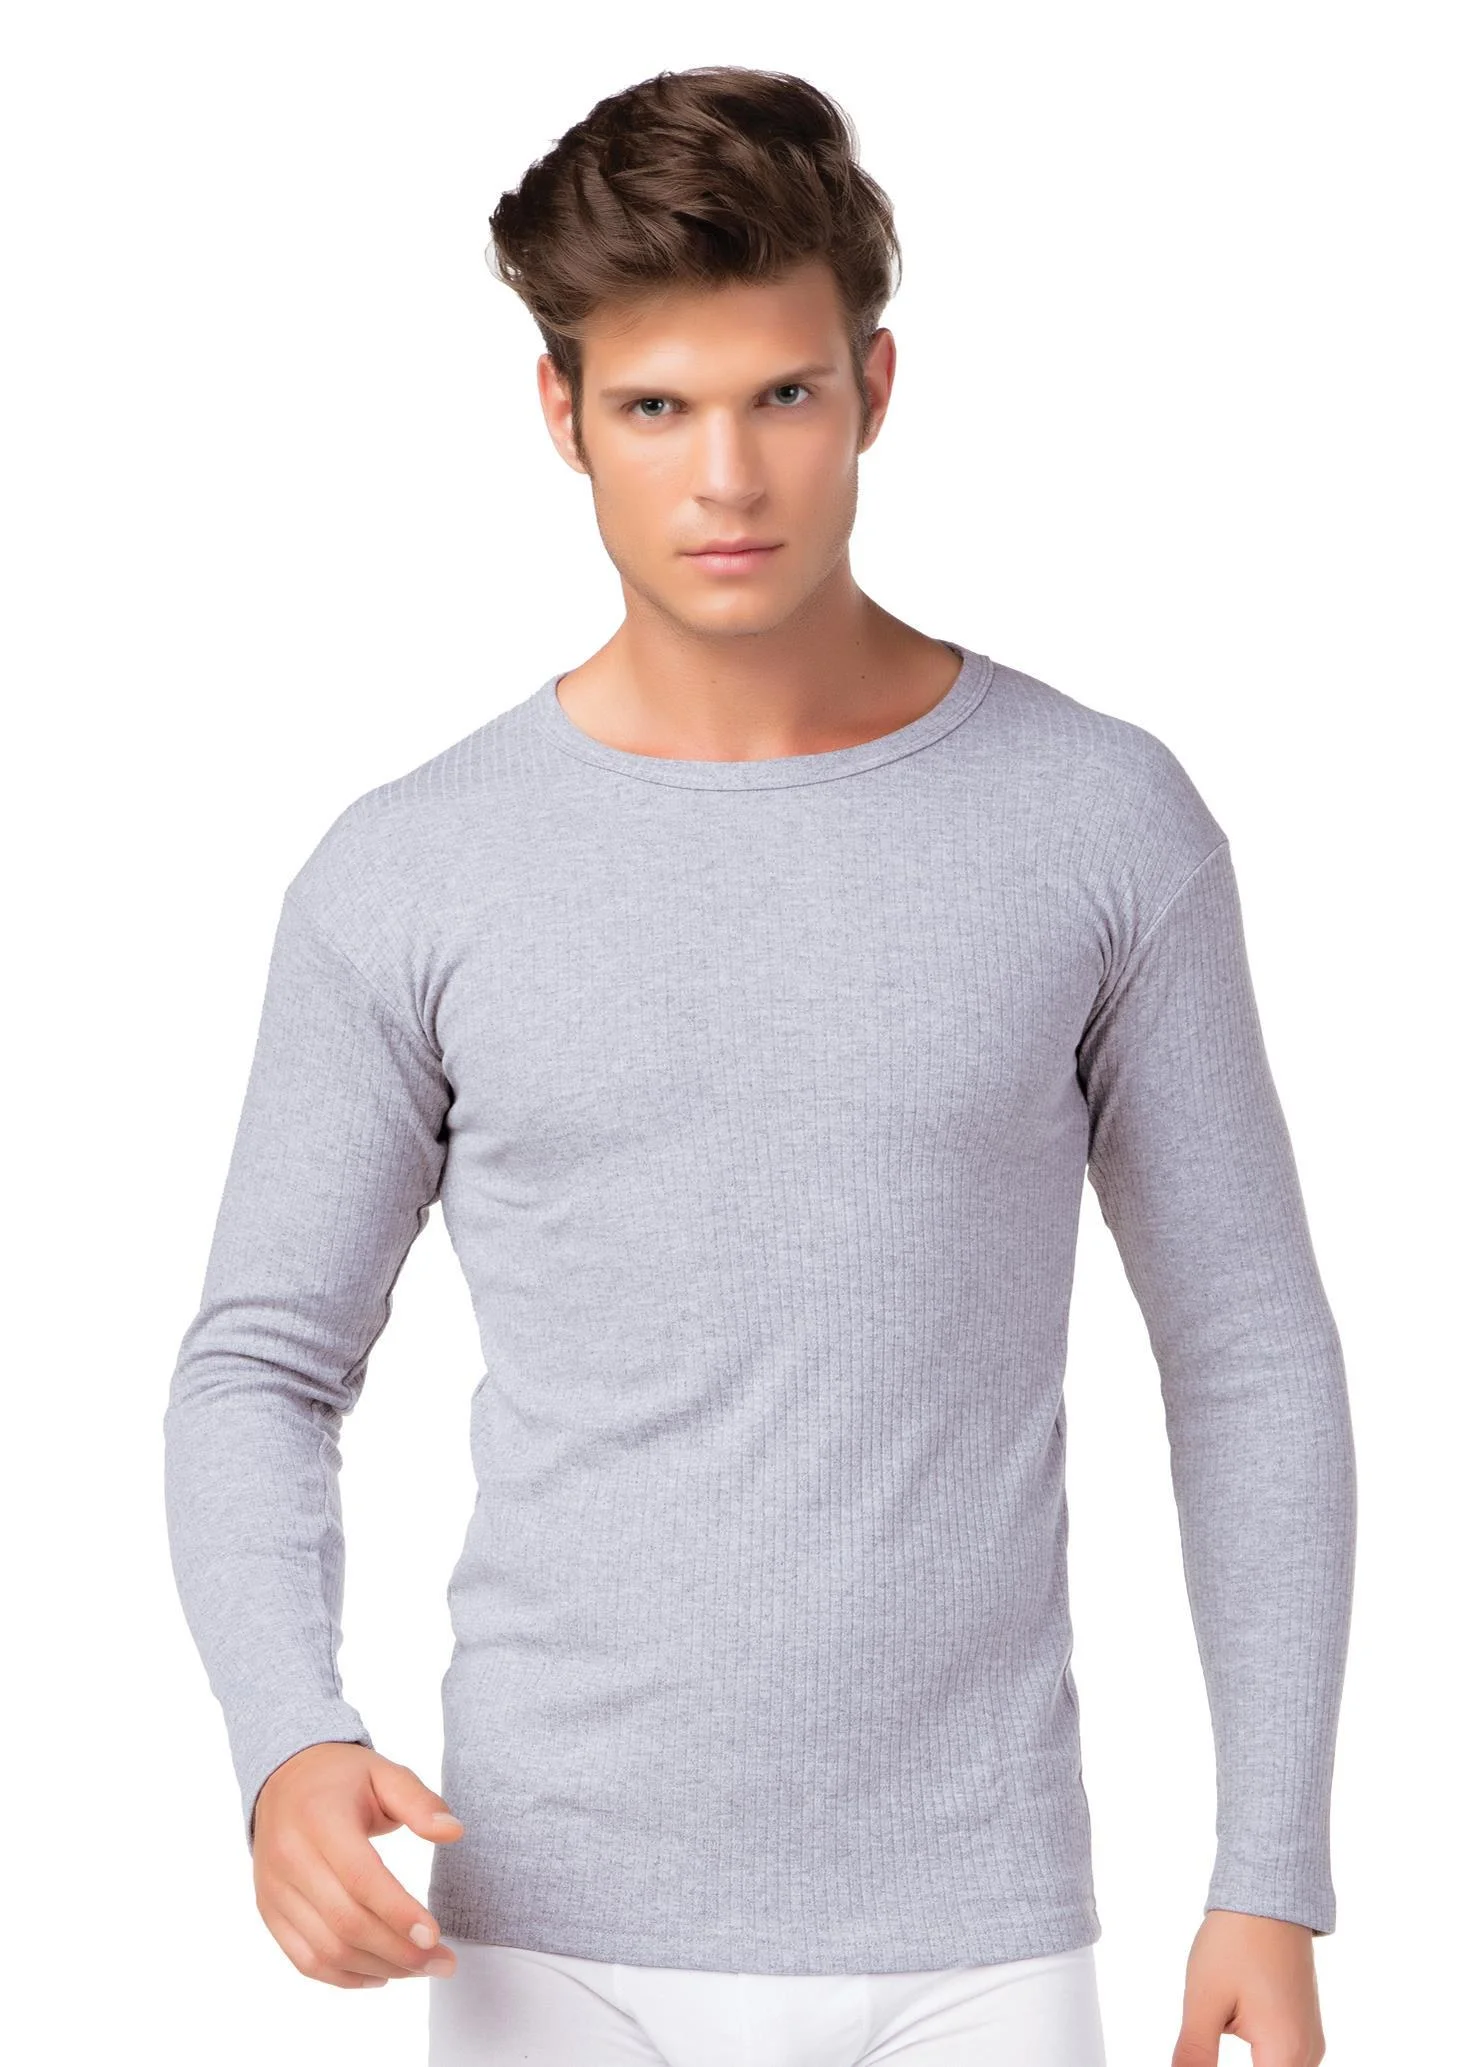 Herren Thermo Unterhemd , lang, Farbe grau melange, Größe 7